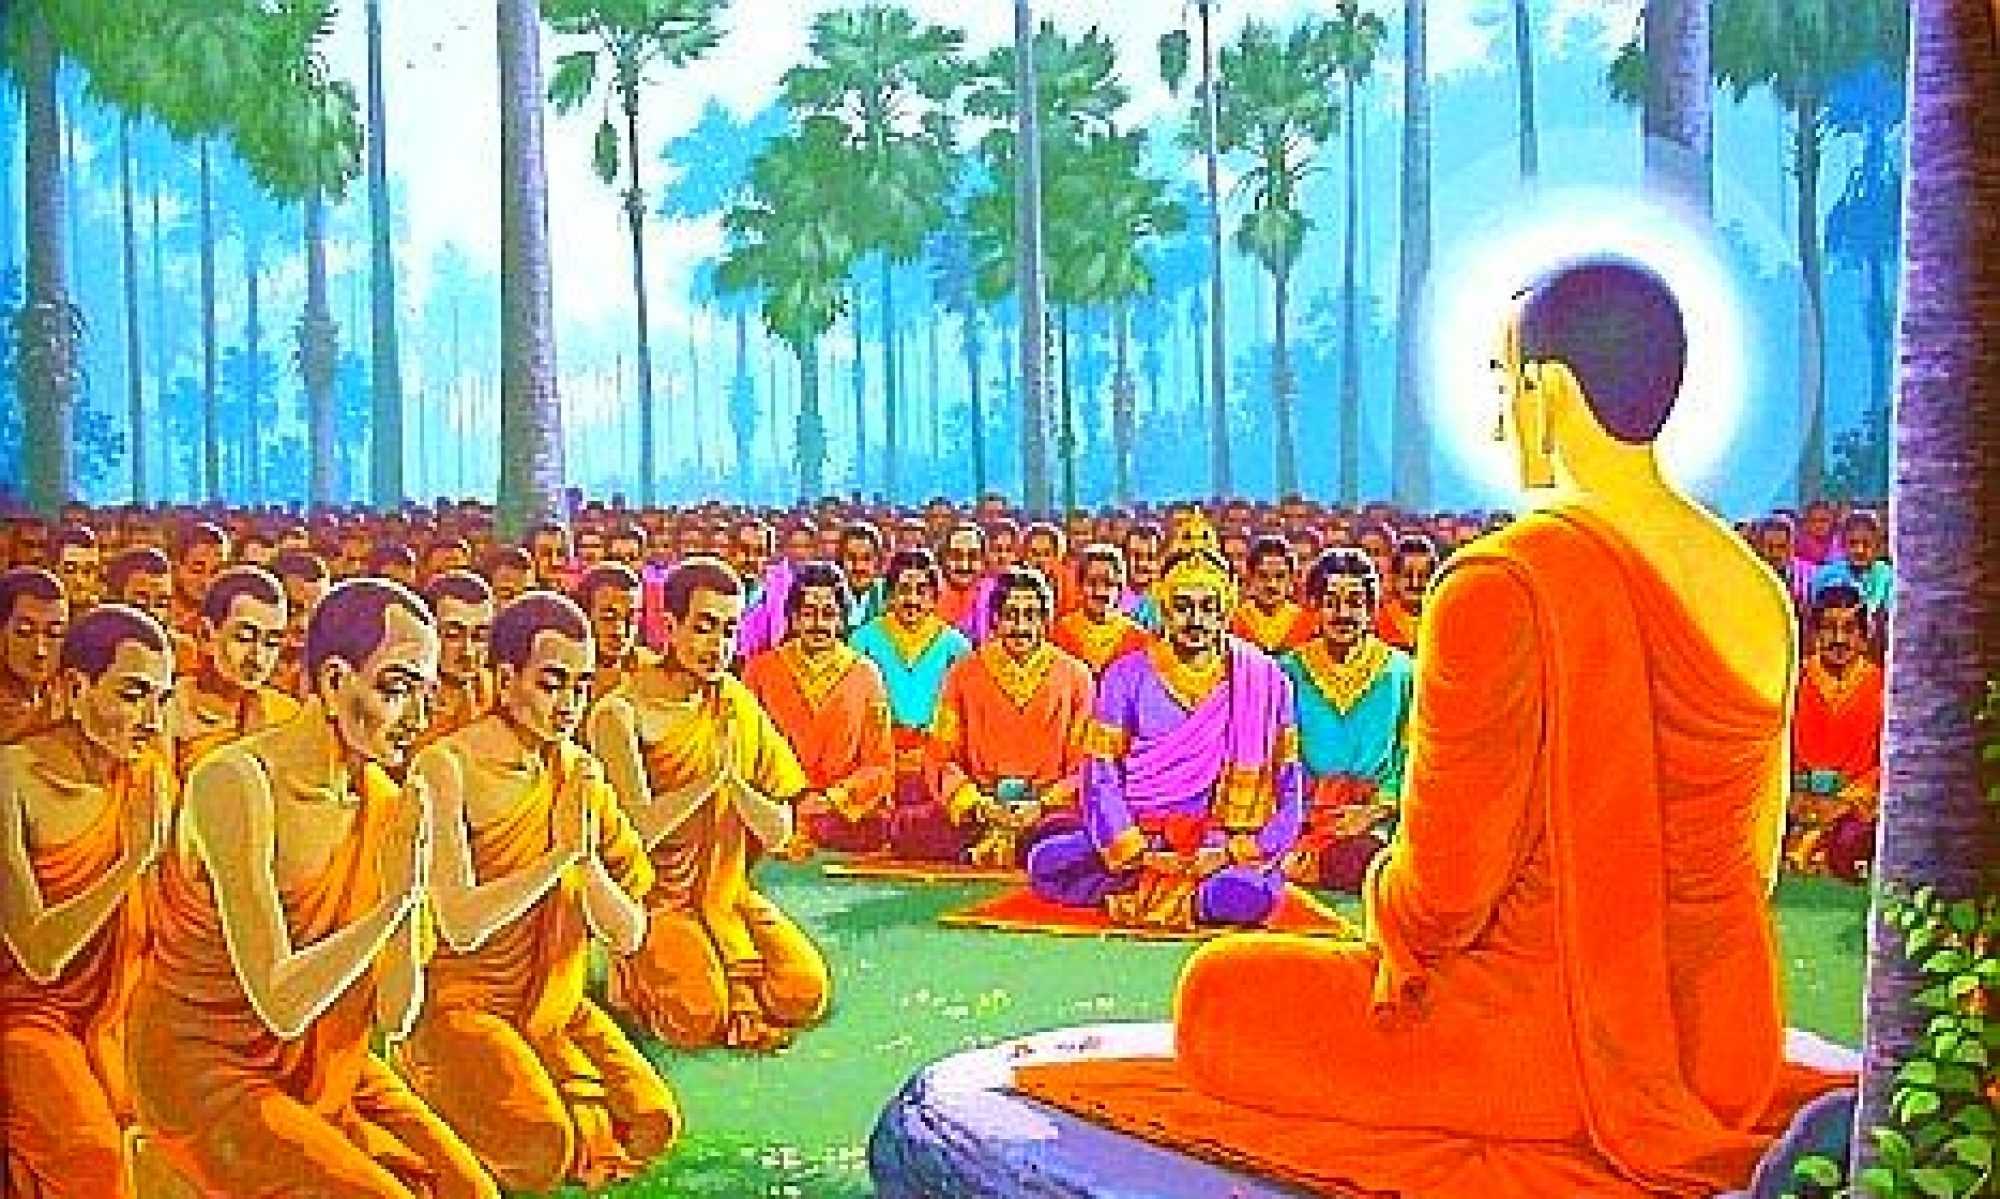 Проповедь будды. Будда дхарма Сангха. Буддизм Тхеравада /хинаяна Будда. Будда Гаутама и ученики. Будда Гаутама Шакьямуни с учениками.